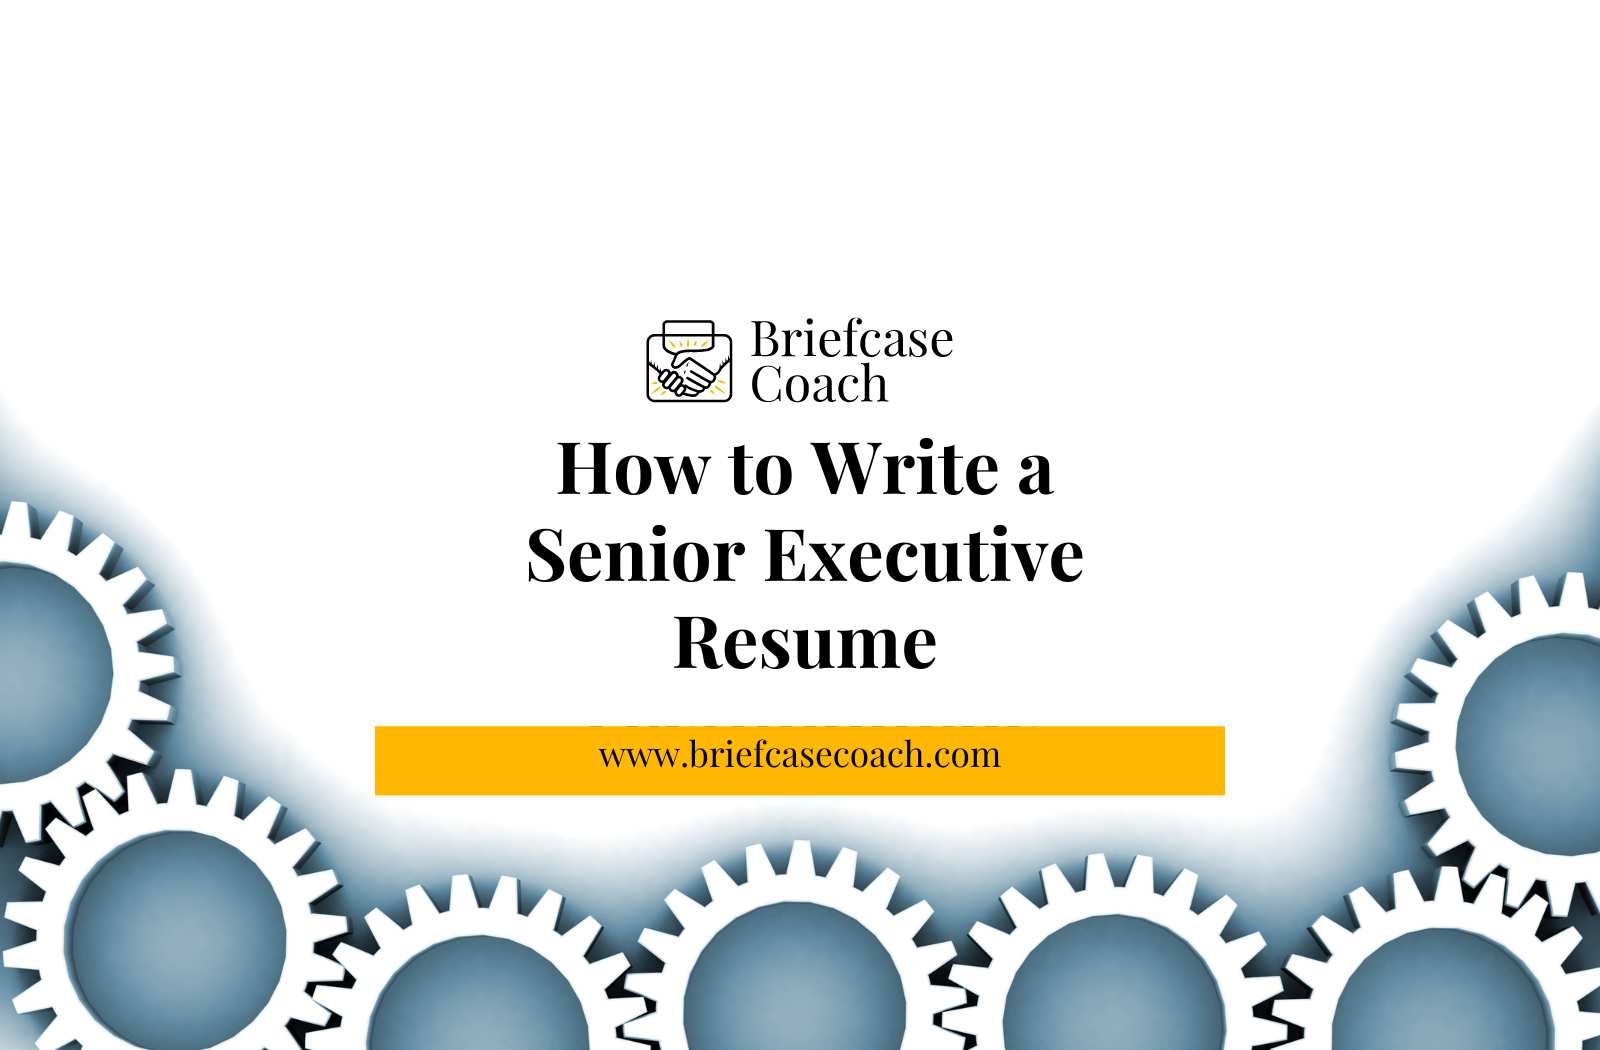 How to Write a Senior Executive Resume